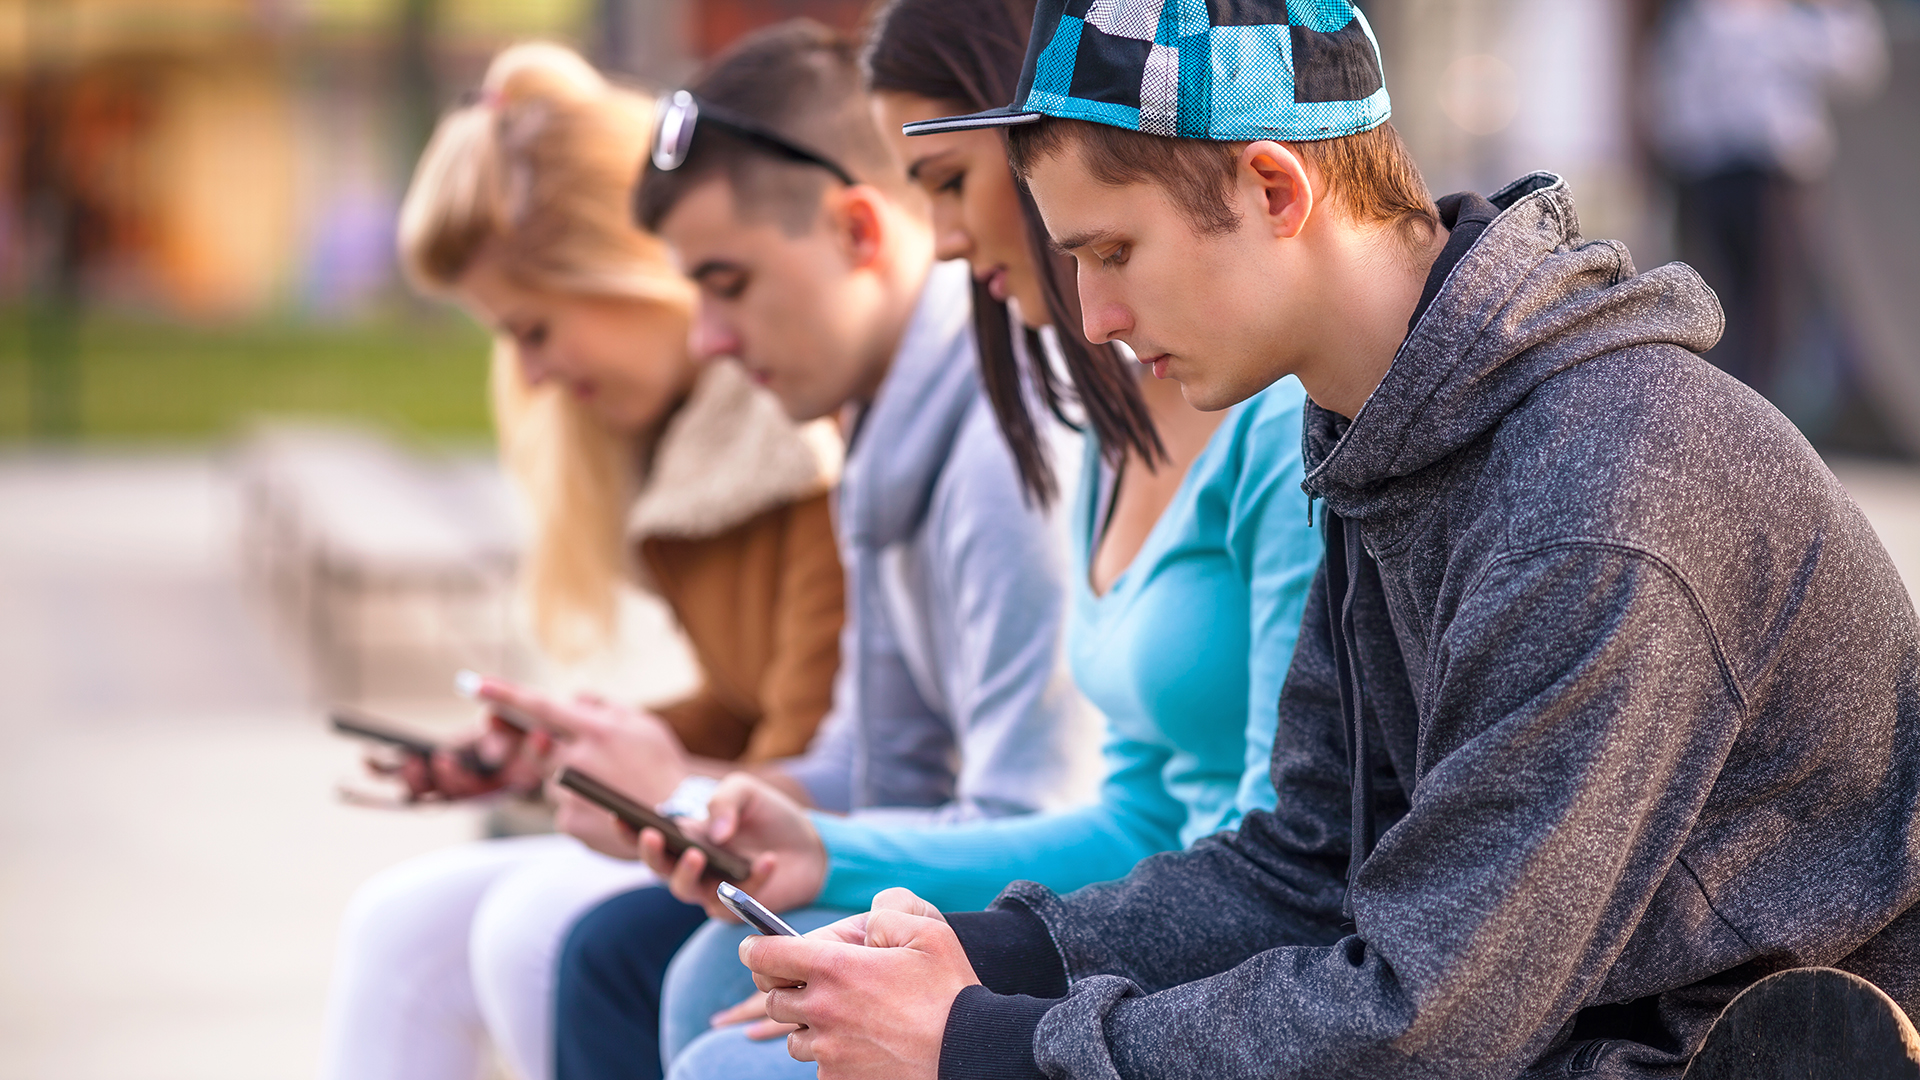 Los jóvenes de la generación smartphone son menos rebeldes,
 según la autora (iStock)